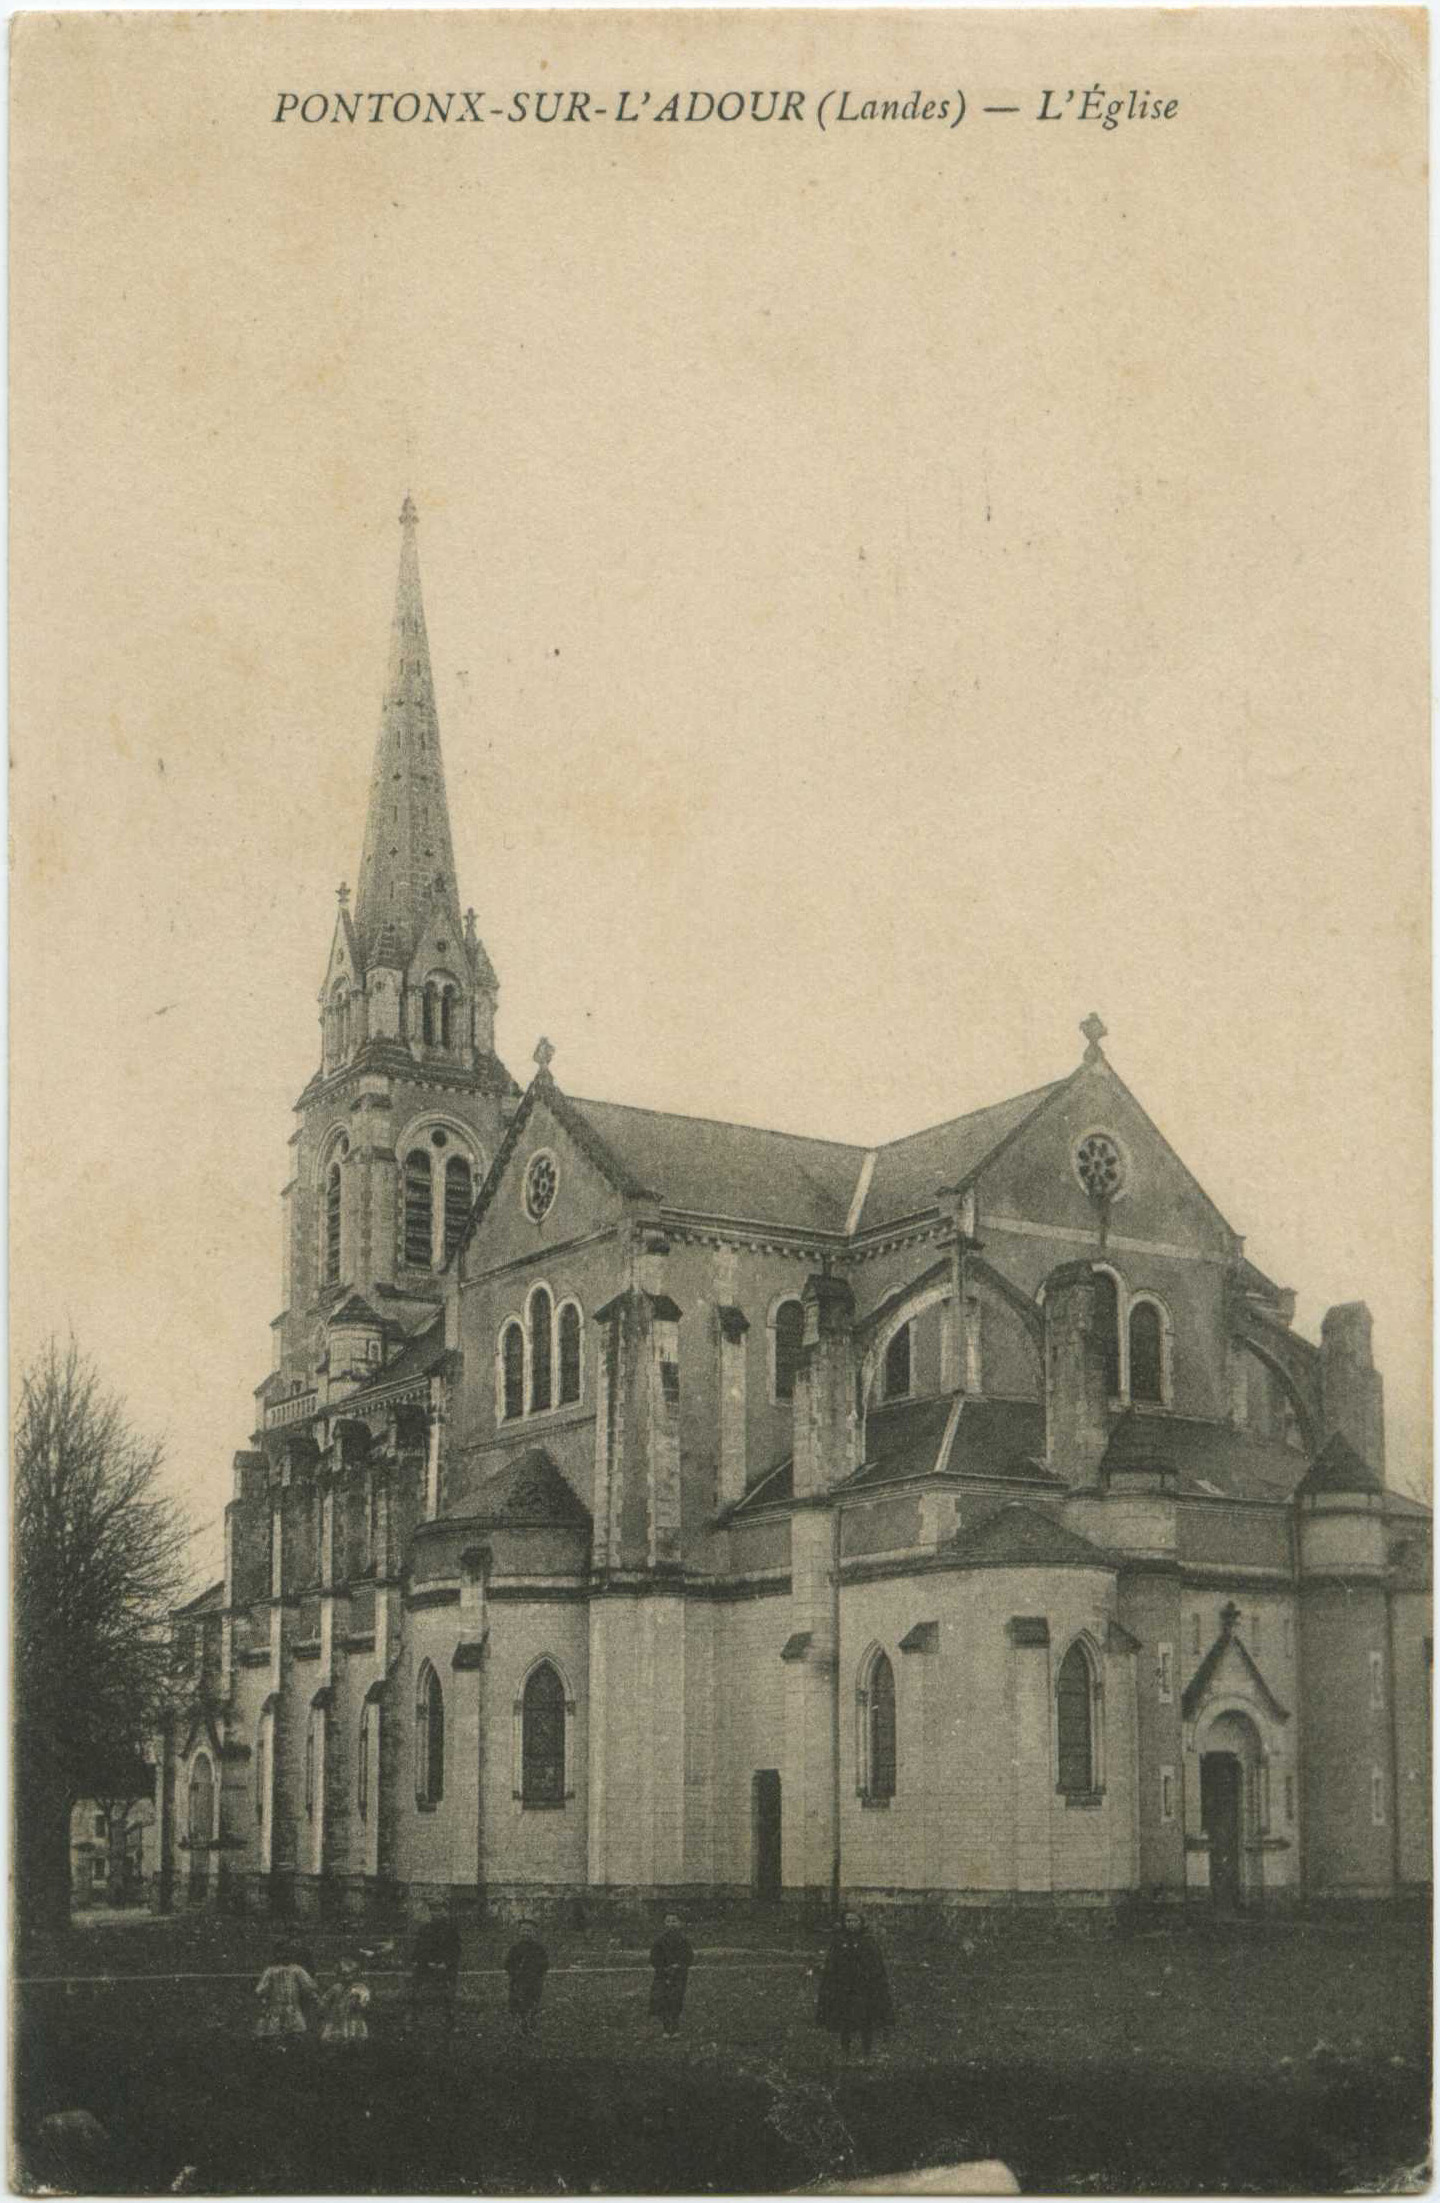 Pontonx-sur-l'Adour - L'Église